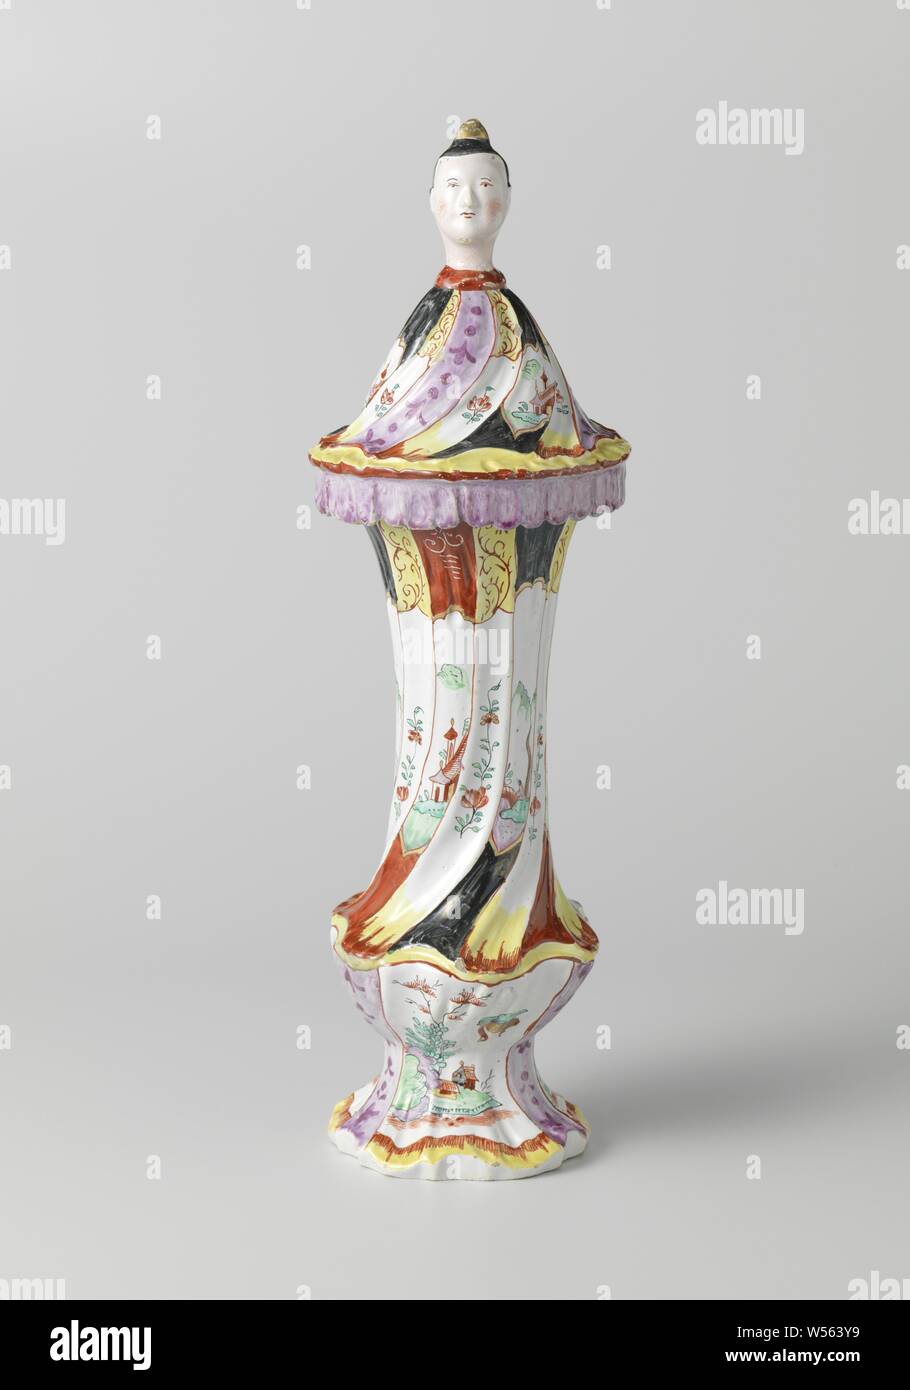 Trois vases, partie d'un vase couvert 151064, peint avec des pagodes, des paysages chinois et bouquets, vase couvert, multicolore avec pagodes, paysages chinois et bouquets à la chinoise. La base et le haut et le bas du vase sont entièrement faits de rocailles. Le couvercle ressemble à un raccourci qui se plie robe chinoise sur le bord du vase. Le bouton du couvercle est formé d'une tête de femme chinoise (chinois, d'autres aspects culturels), De Grieksche A, Delft, c. 1765, H 43 cm × d 13 cm Banque D'Images